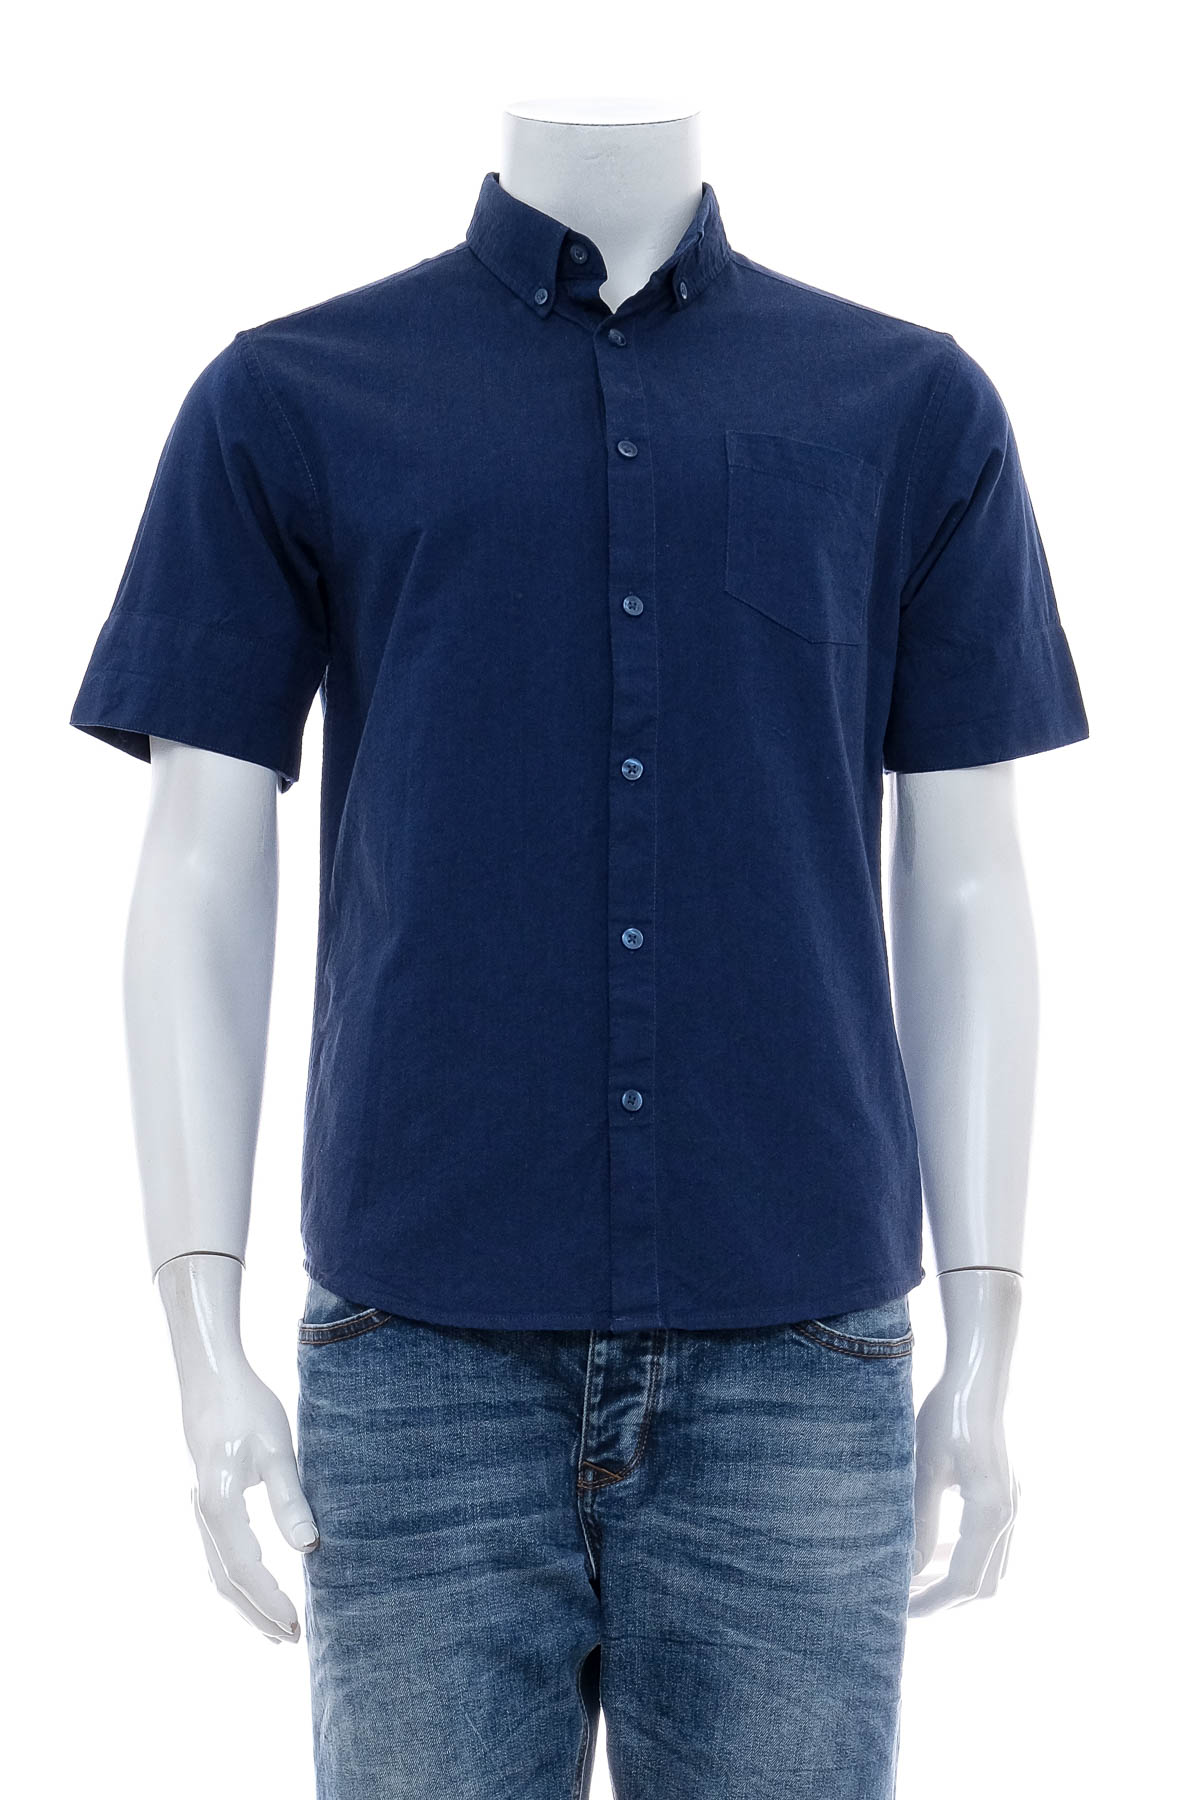 Ανδρικό πουκάμισο - PRIMARK - 0